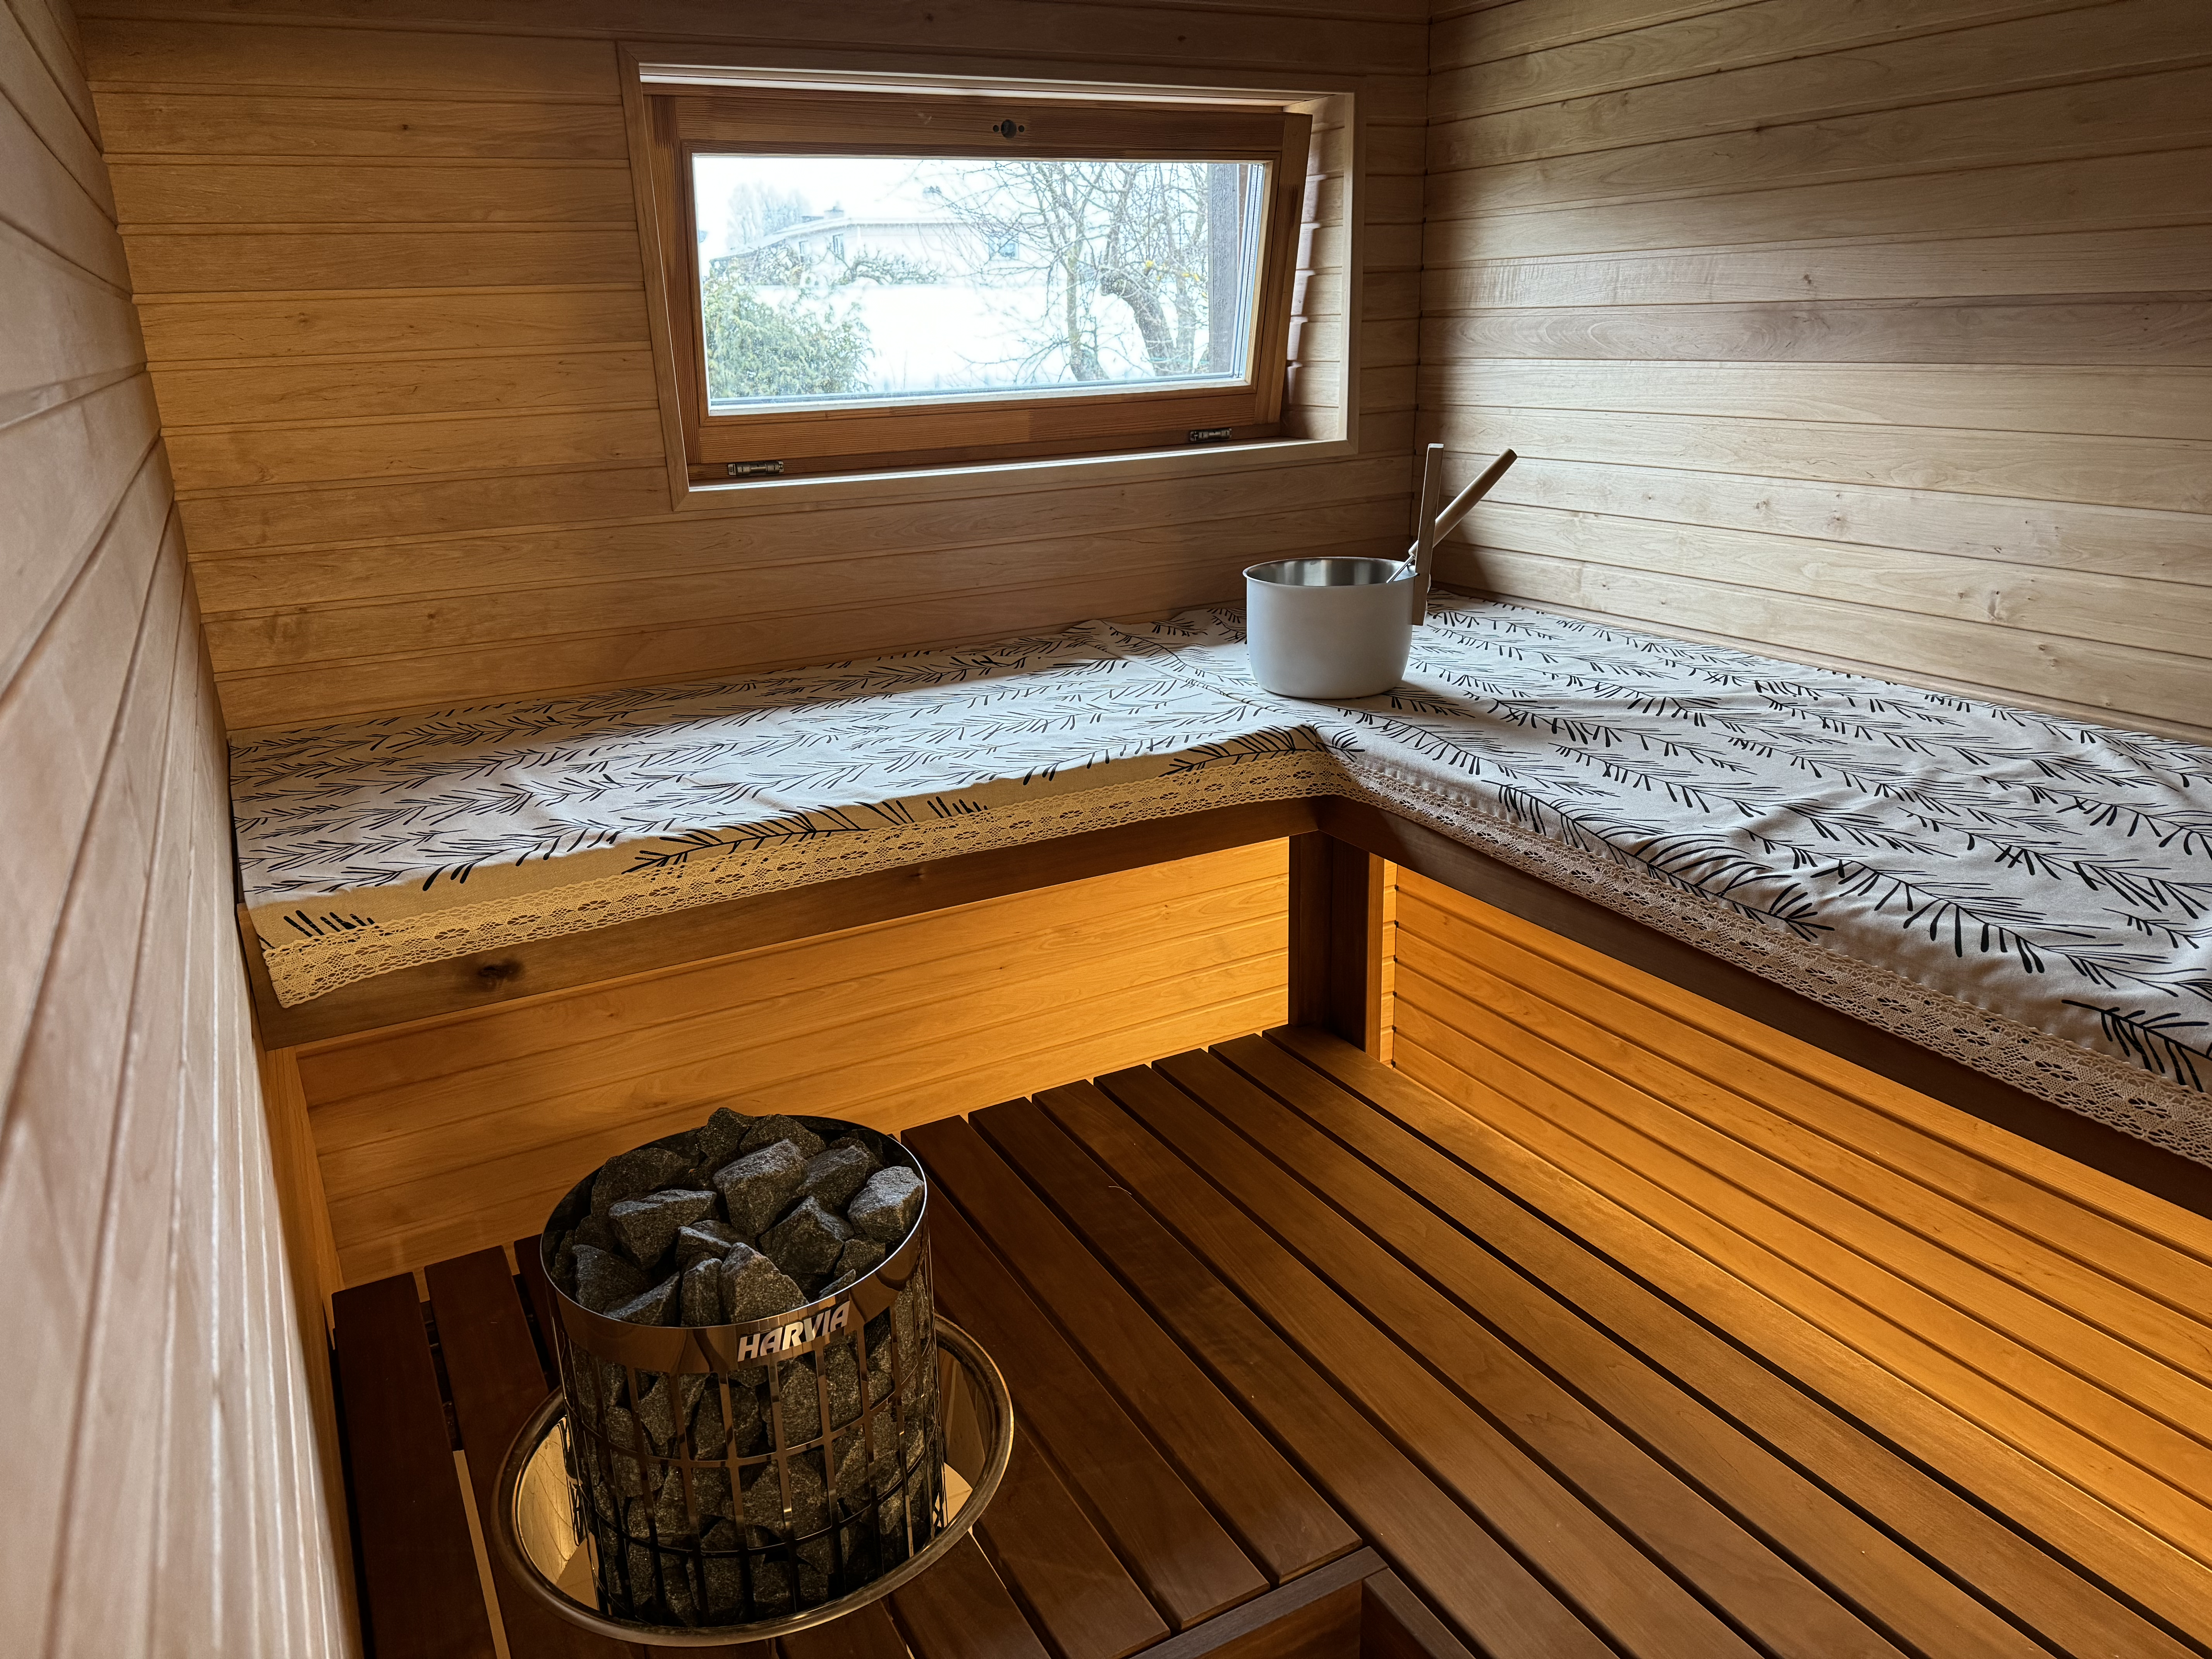 Saunaskäimine on mõnus rahustav tegevus, kuid meeles tuleb pidada ka seda, et nii saunalava kui ka tervet sauna on vaja... The post Õmblemine: Saunalava kate ap